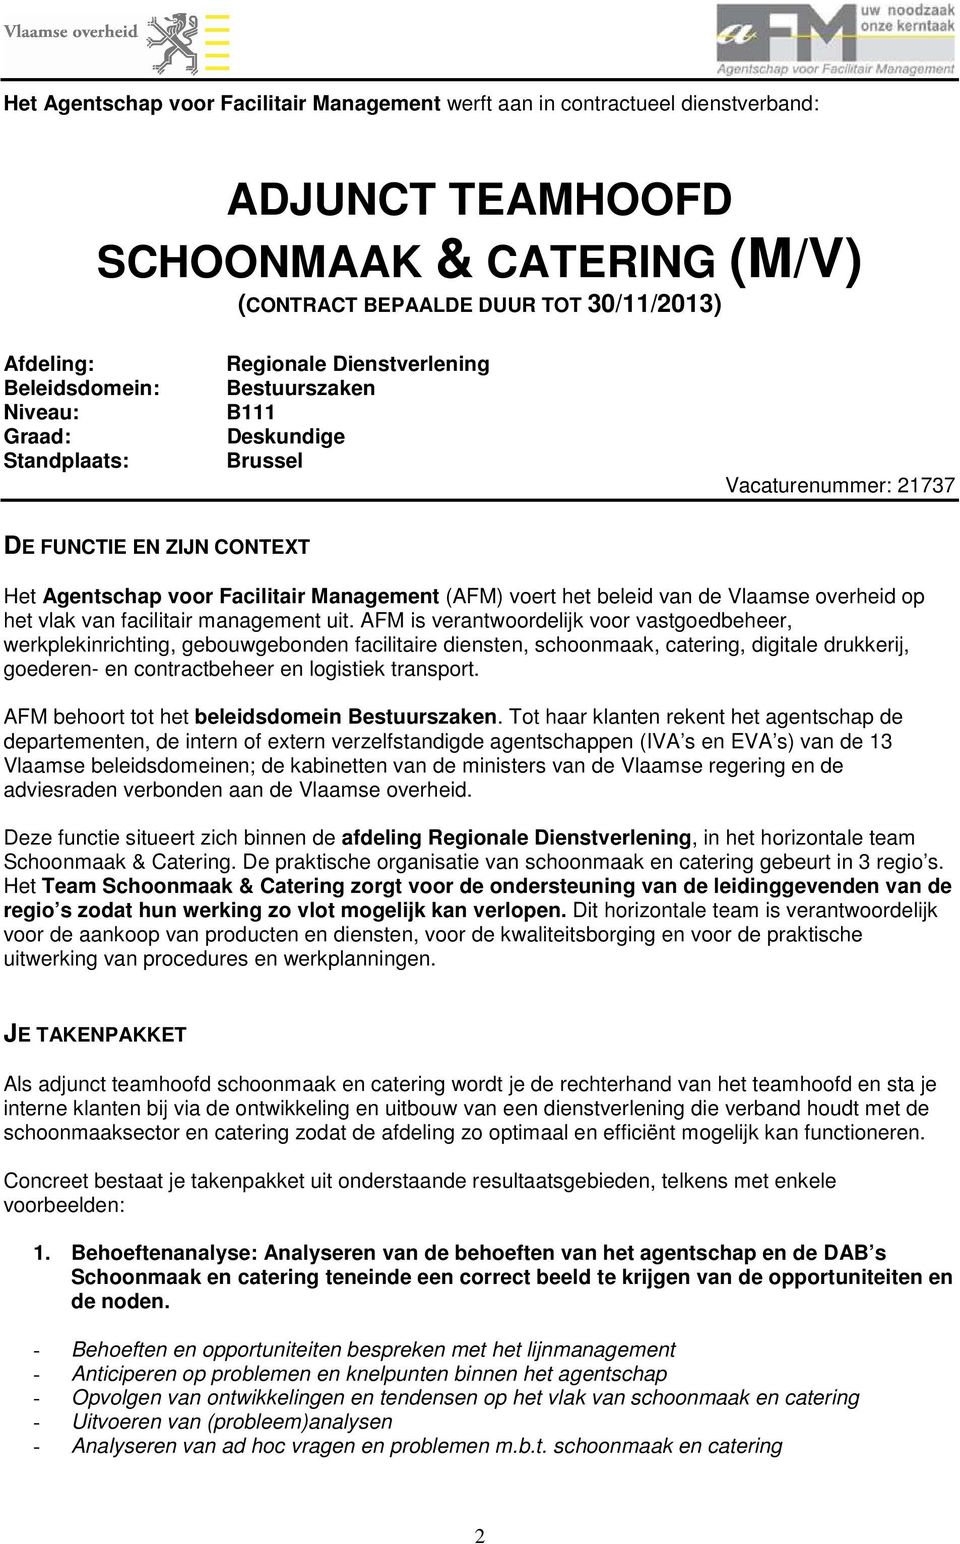 beleid van de Vlaamse overheid op het vlak van facilitair management uit.